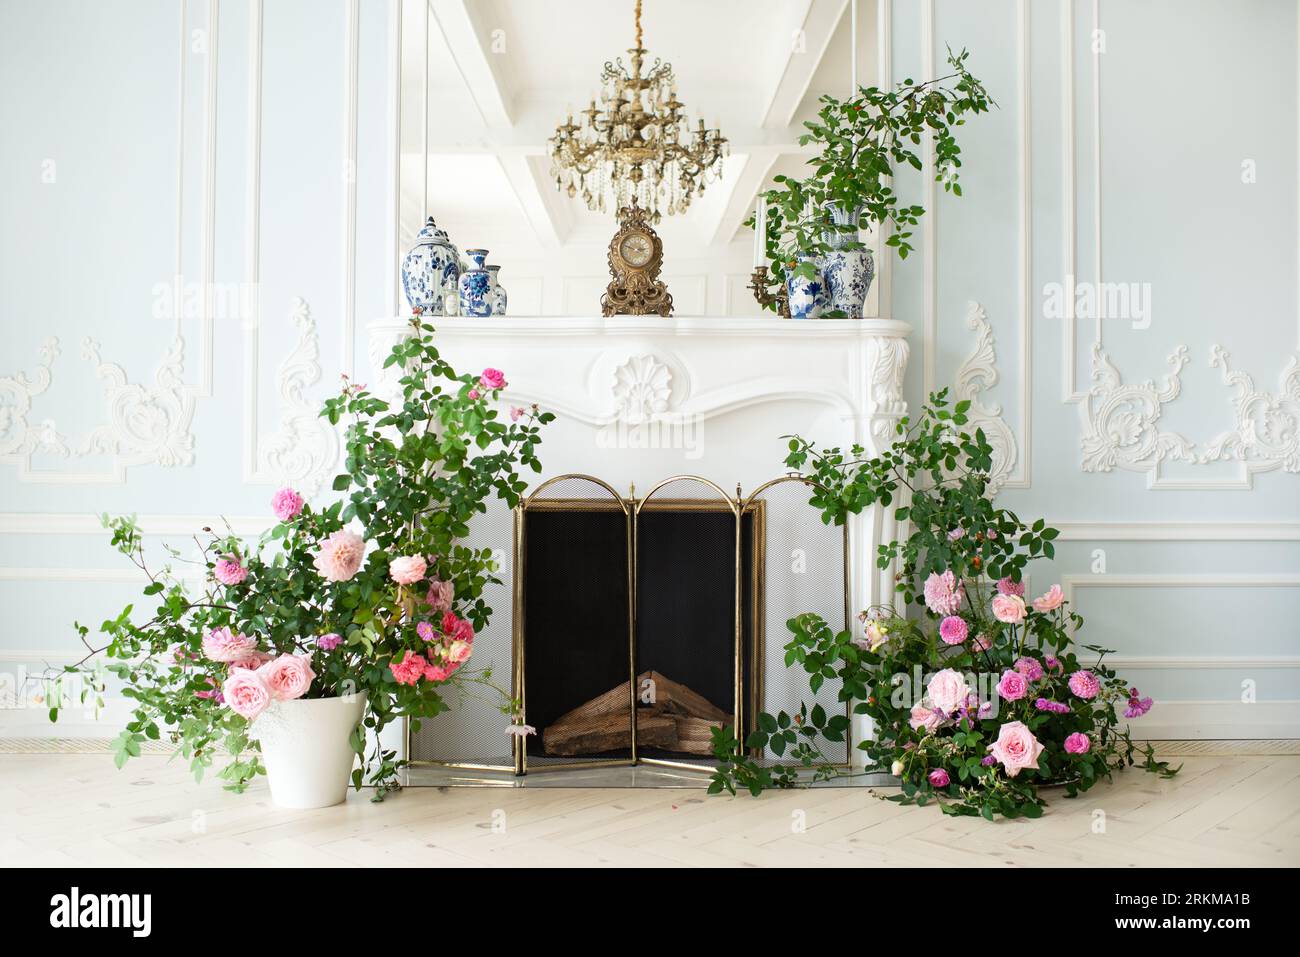 Helles, luxuriöses Wohnzimmer in weiß und Blau mit Blumen in Vasen. Die Wände sind mit Rokoko dekoriert. Vase mit Blumen auf dem Backgro Stockfoto